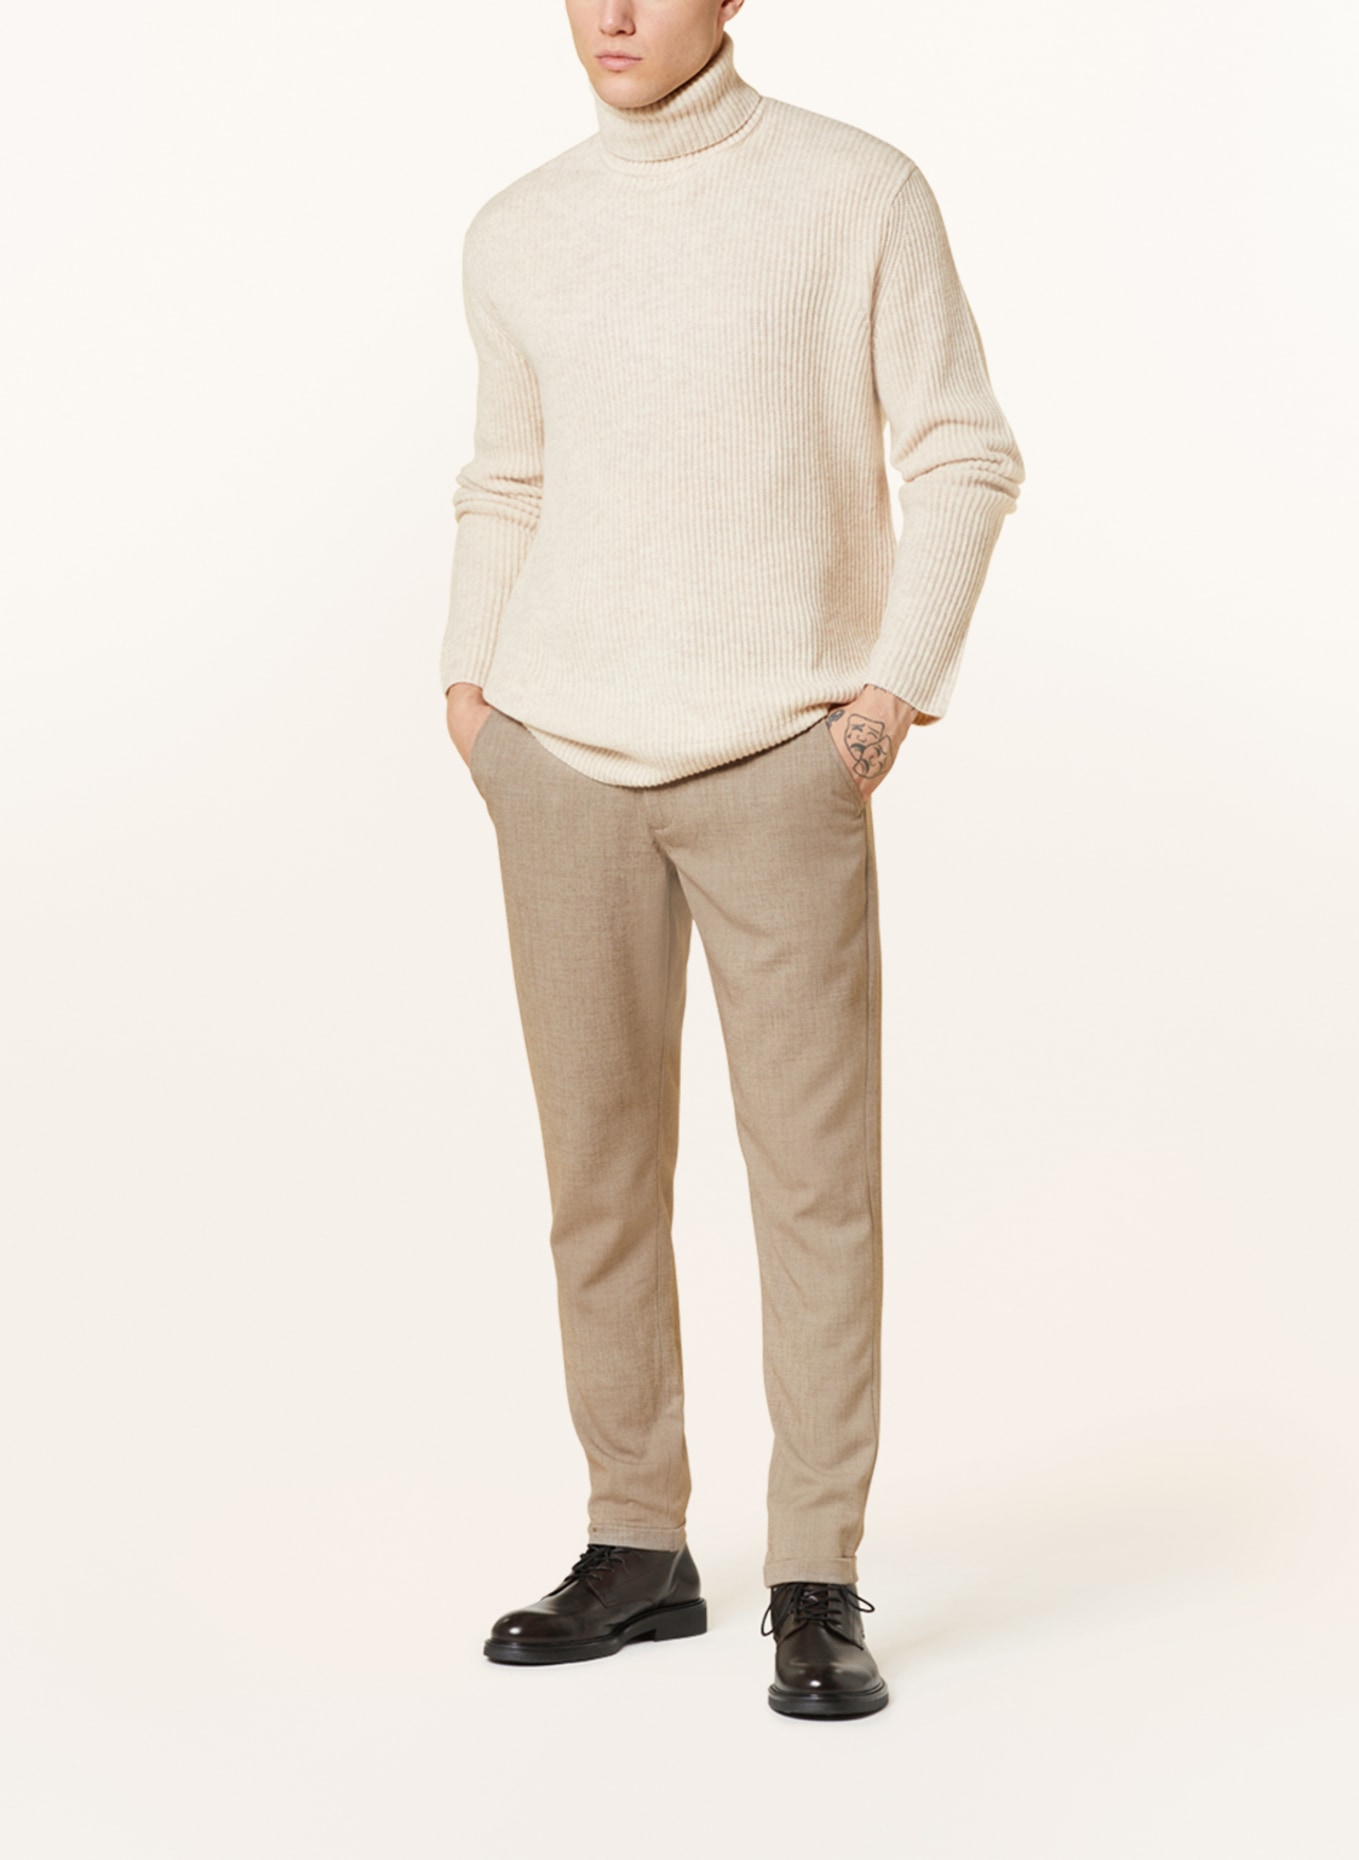 LES DEUX Turtleneck sweater EDDIE made of merino wool, Color: BEIGE (Image 2)